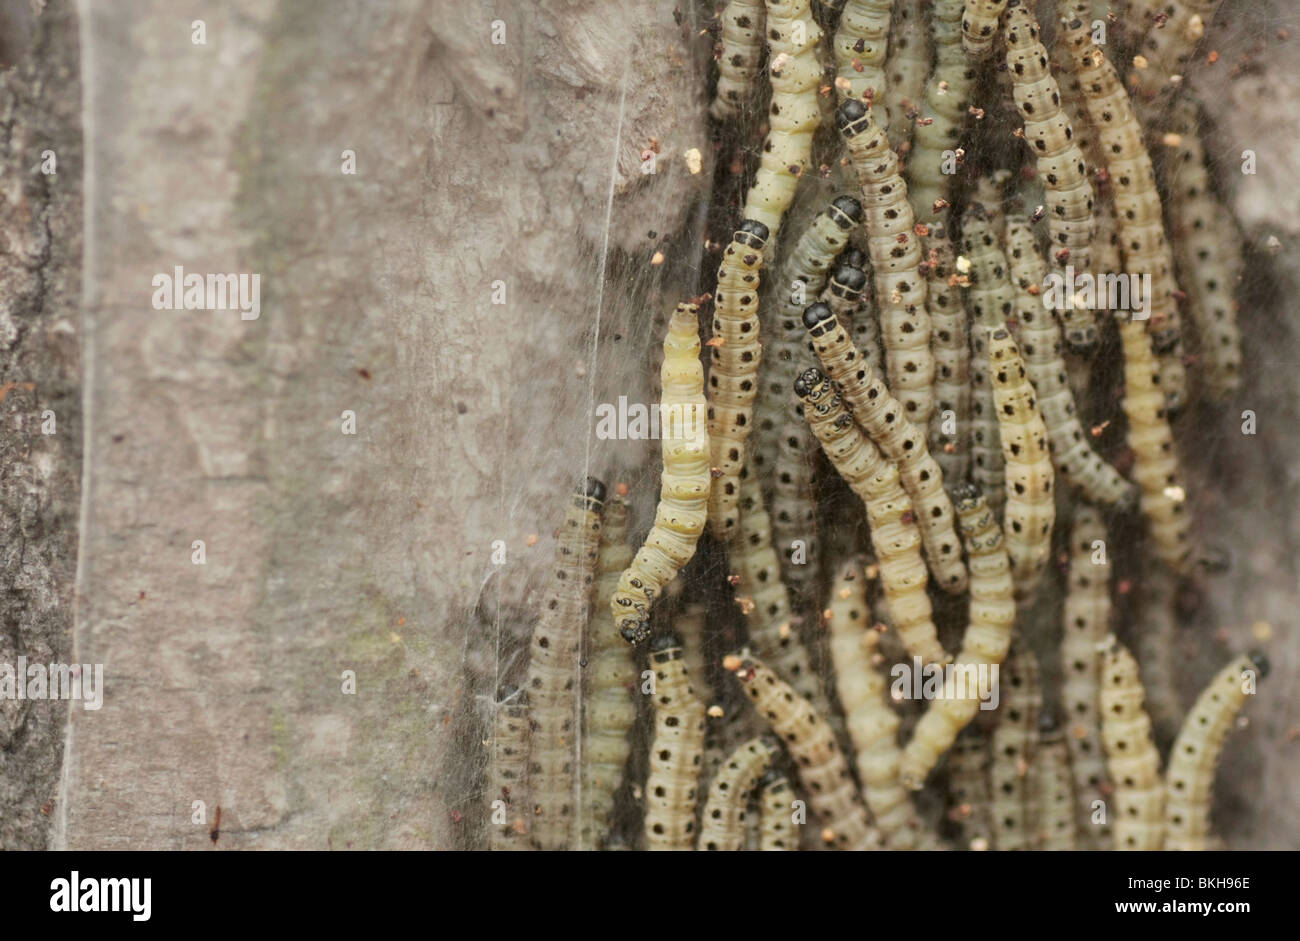 Se reunieron ragfijn Wilg bedekt spinsel van de stippelmotrups in een massa rupsen; sauce cubierto por web del armiño moth Caterpillar y una masa de orugas. Foto de stock